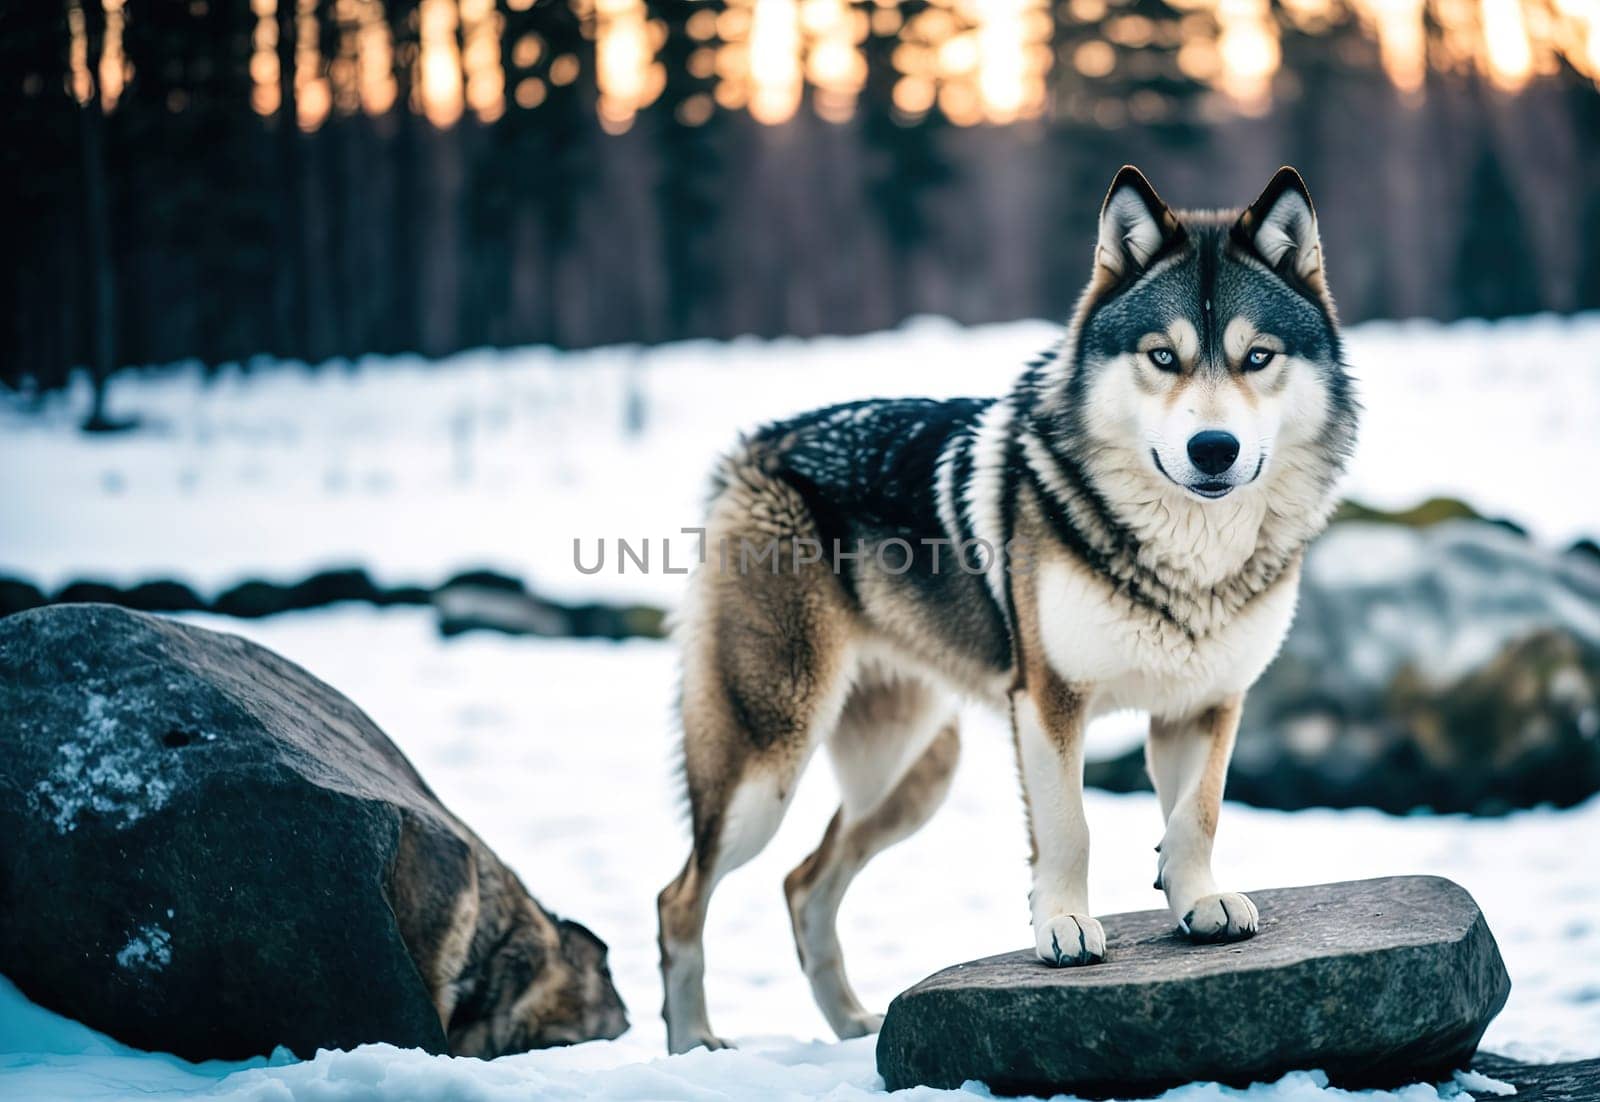 Wild Grey Wolf in winter landscape by macroarting